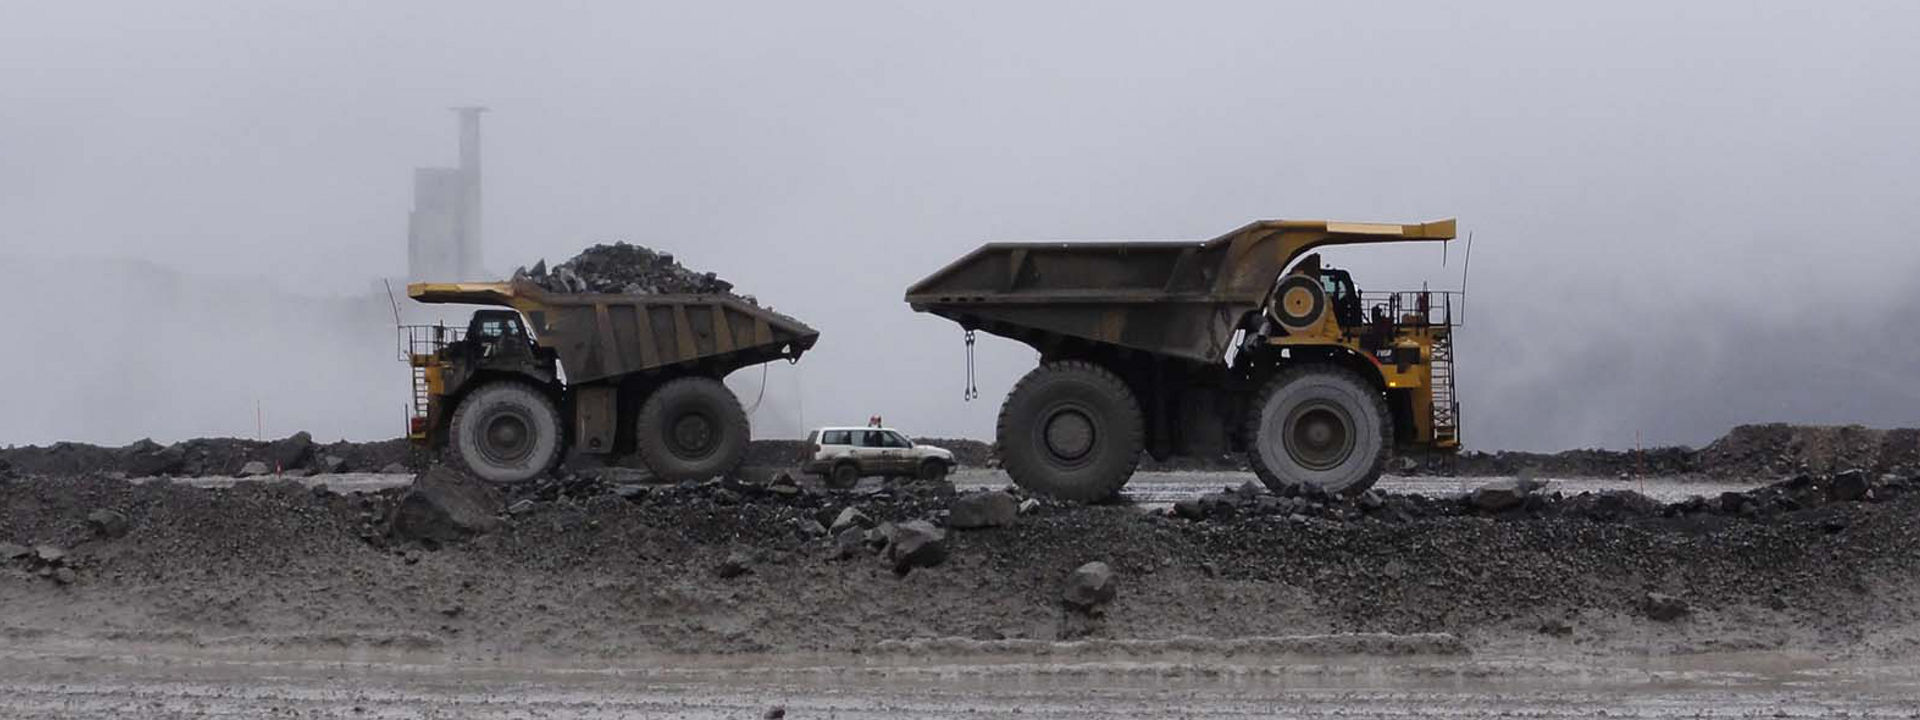 Quatro veículos todo-o-terreno equipados com pneus Bridgestone a trabalhar numa mina a céu aberto